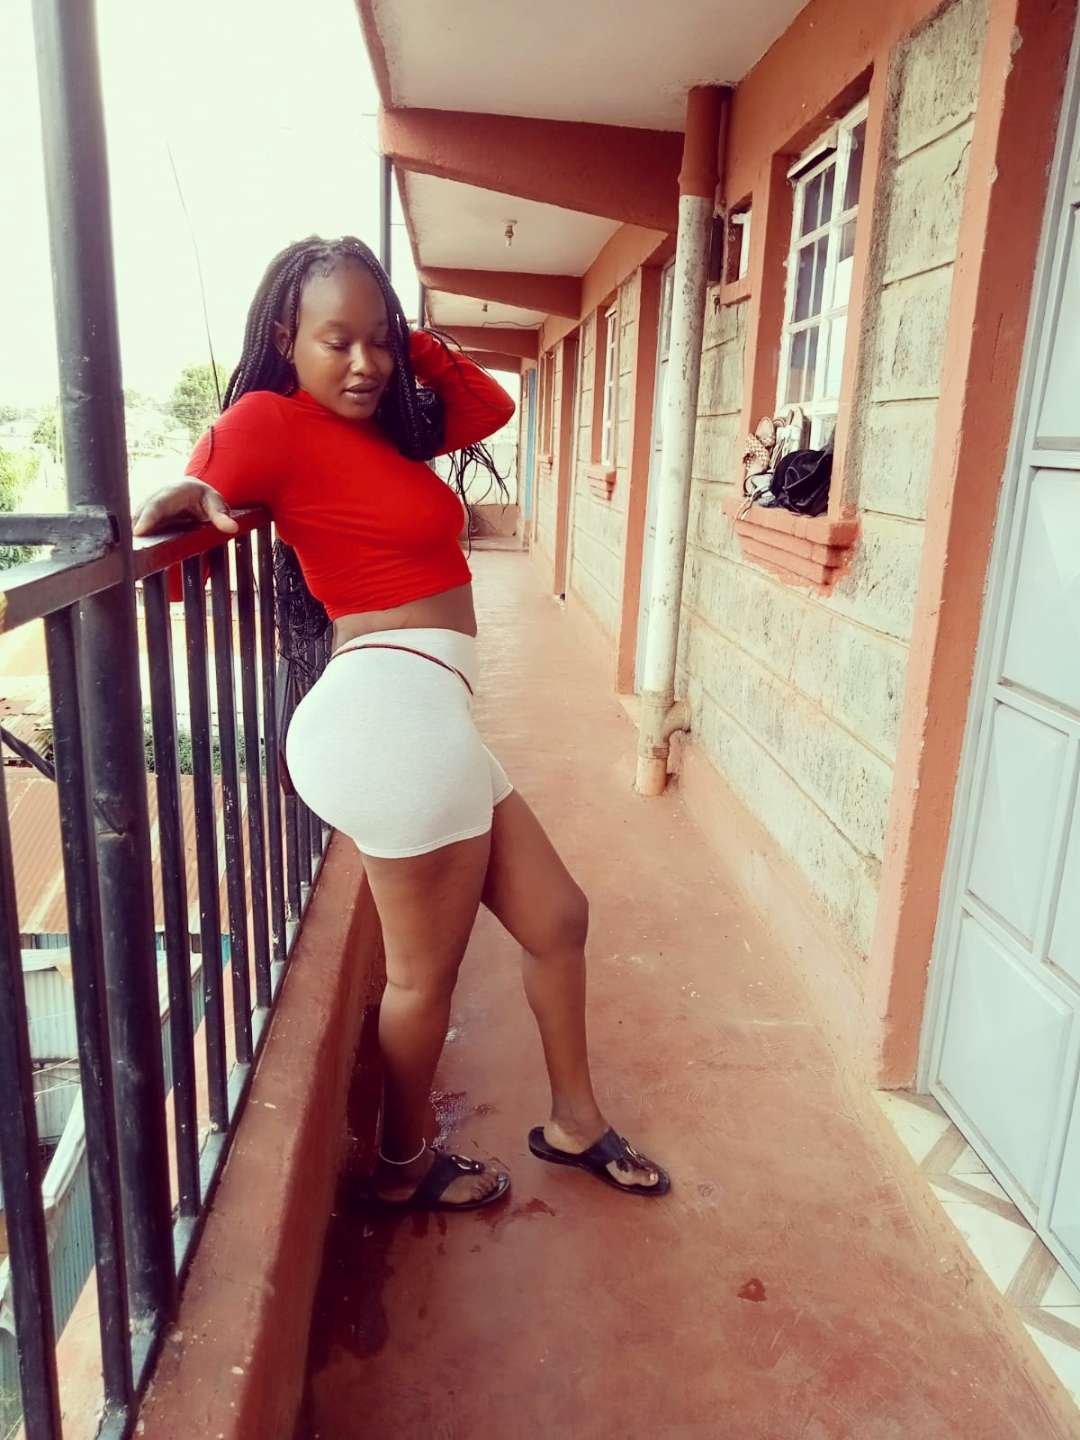 Hii Figure Na Size Napenda Saidi Sex And Relationships Kenya Talk 